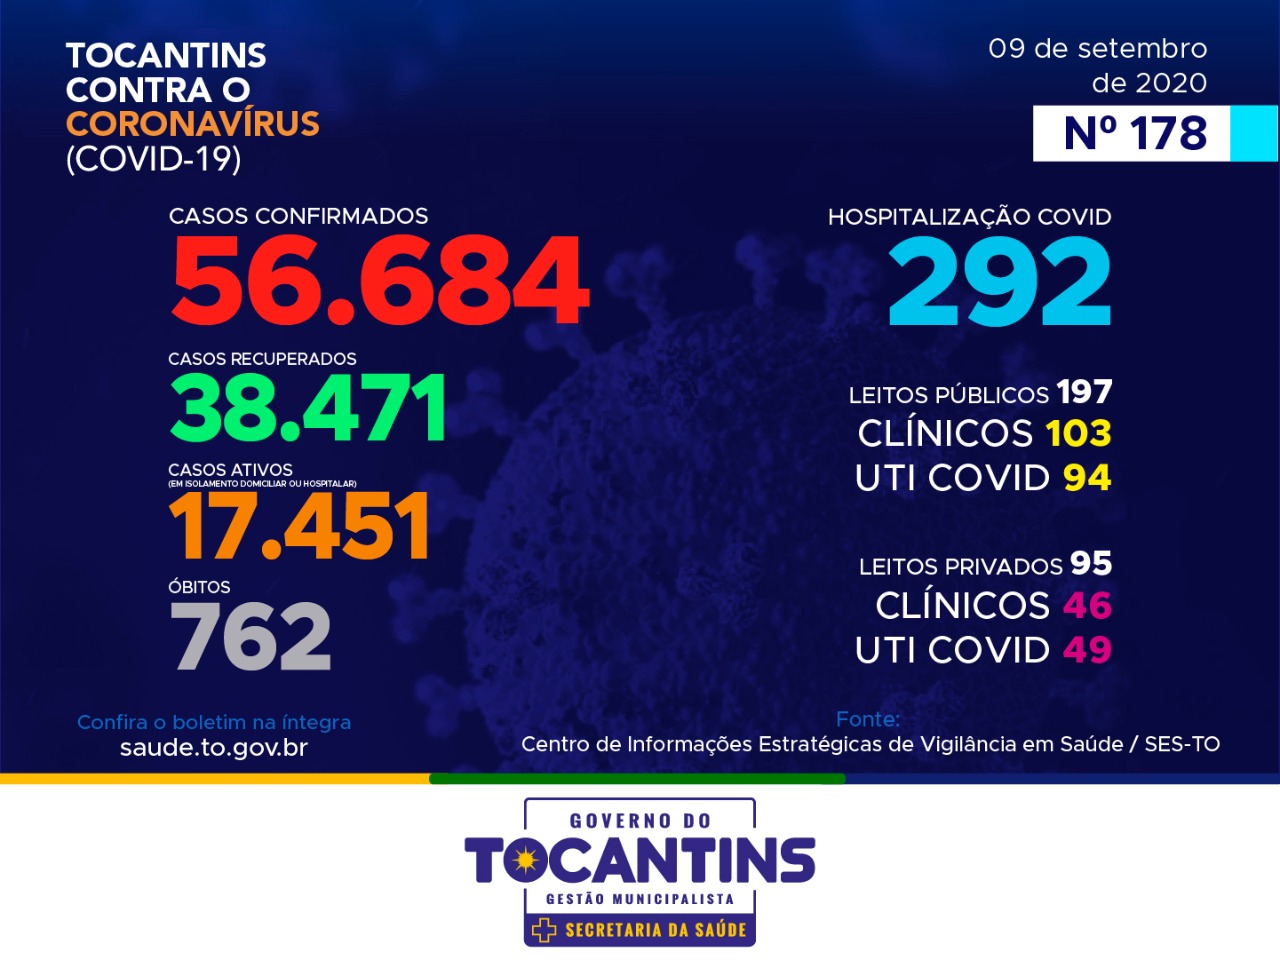 Coronavírus: hoje o Tocantins registra 520 novos casos e segue com 762 óbitos